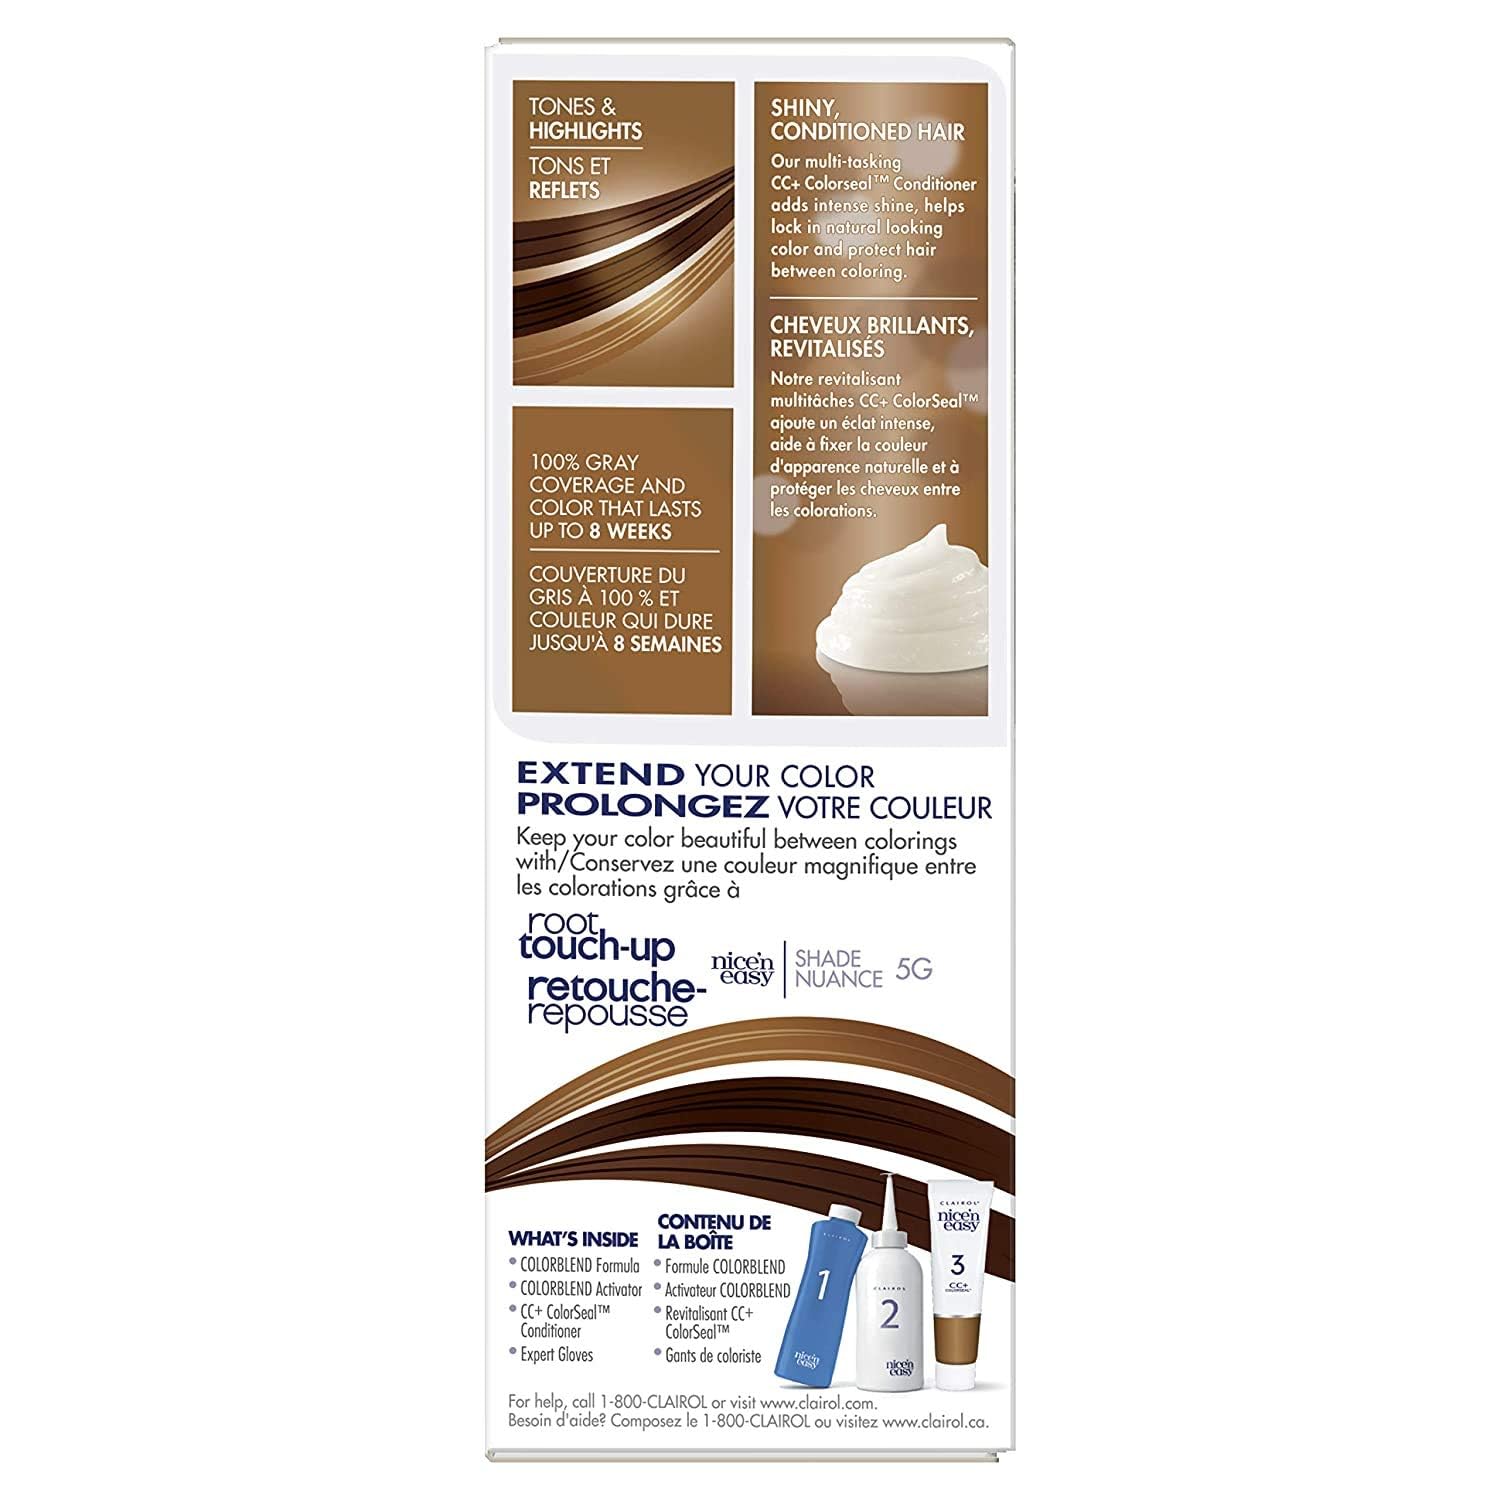 Clairol Nice'n Easy Liquid Permanent Hair Dye, 5G Natural Medium Golden Brown Hair Color, Pack of 3(Packaging May vary)